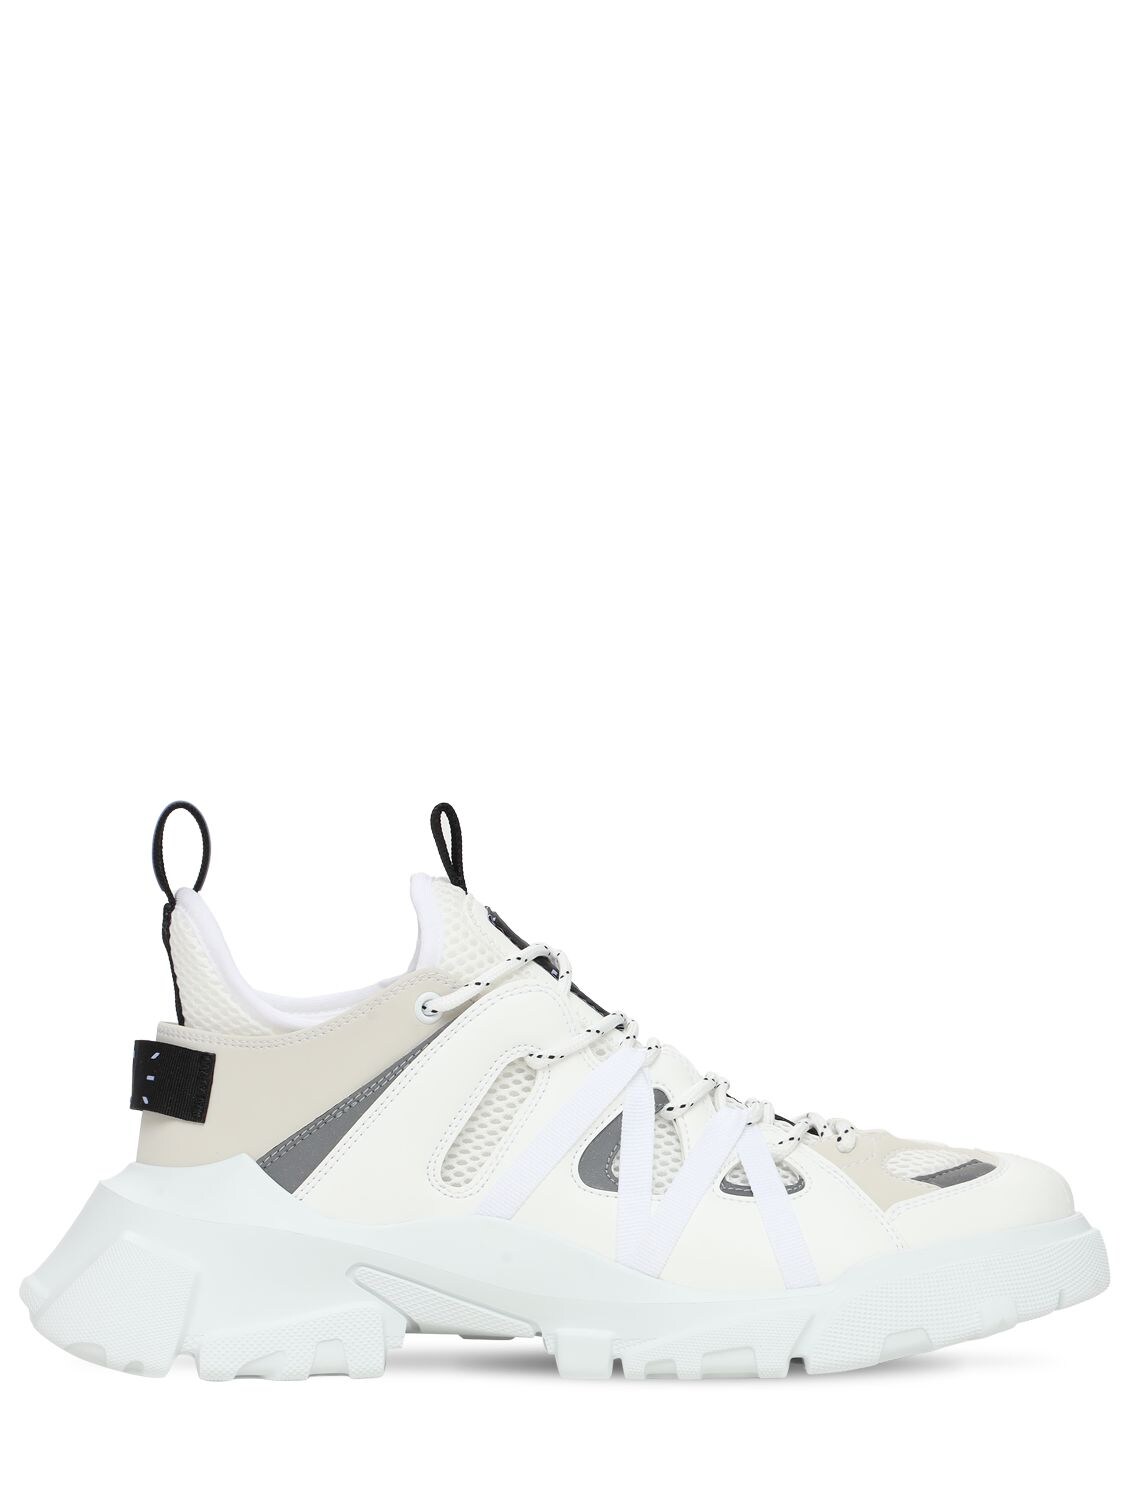 Mcq - Icon zero orbyt descender 2.0 sneakers - White | Luisaviaroma